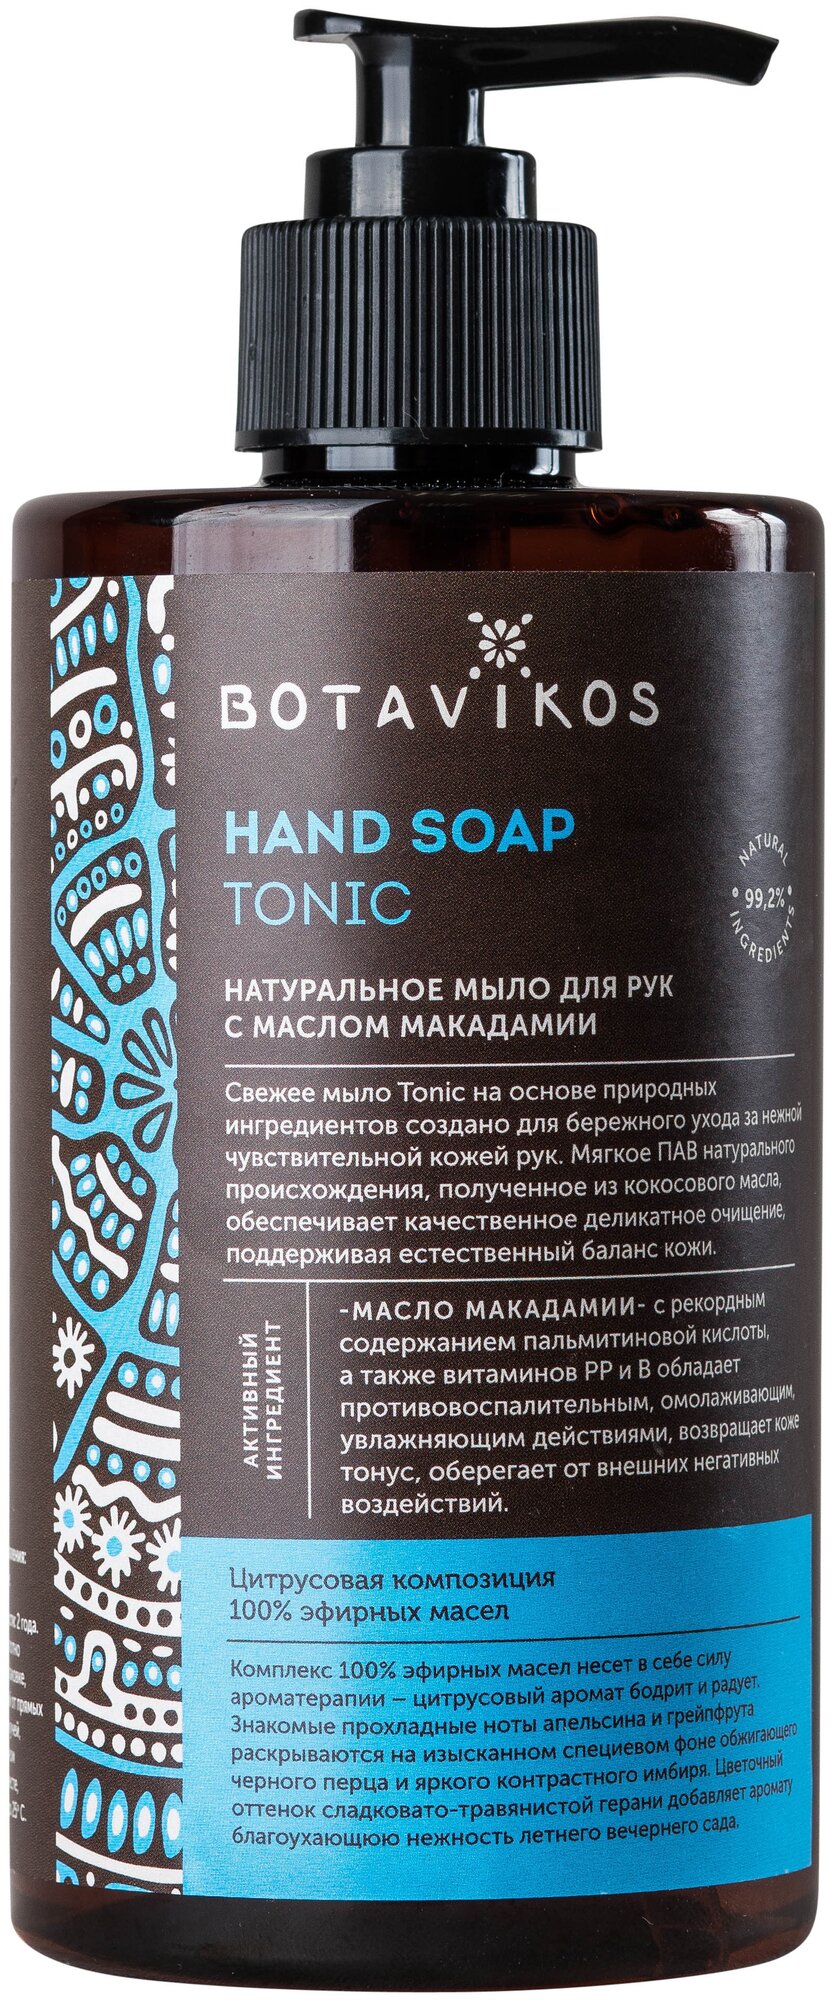 Жидкое мыло для рук "Tonic", 460 мл (, ) ООО "БОТАНИКА" - фото №1